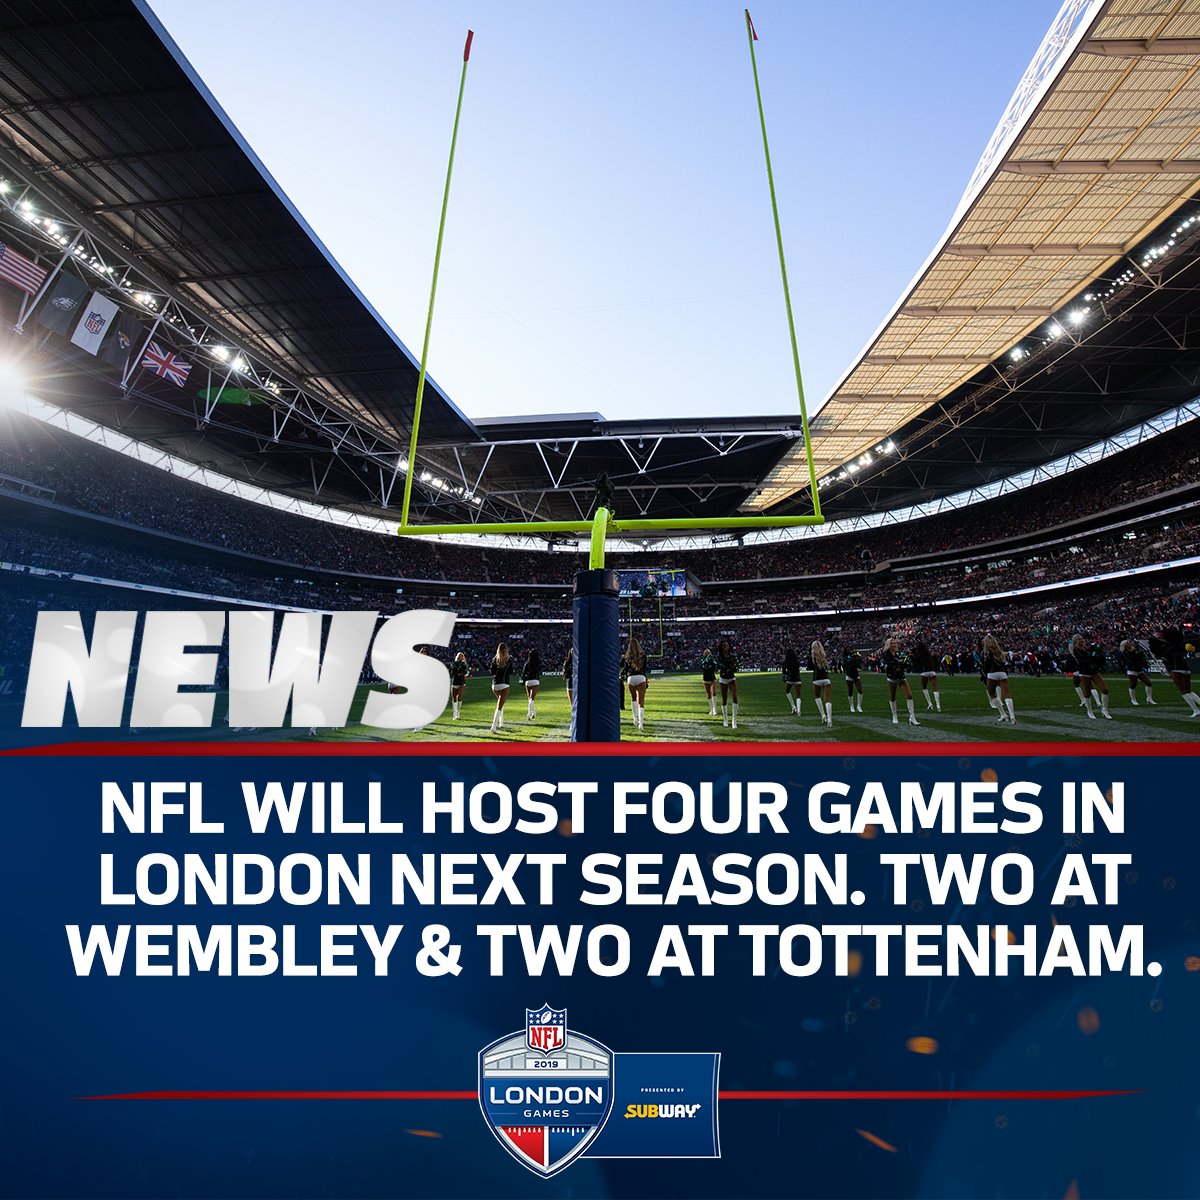 La NFL anuncia 4 partidos en London para 2019